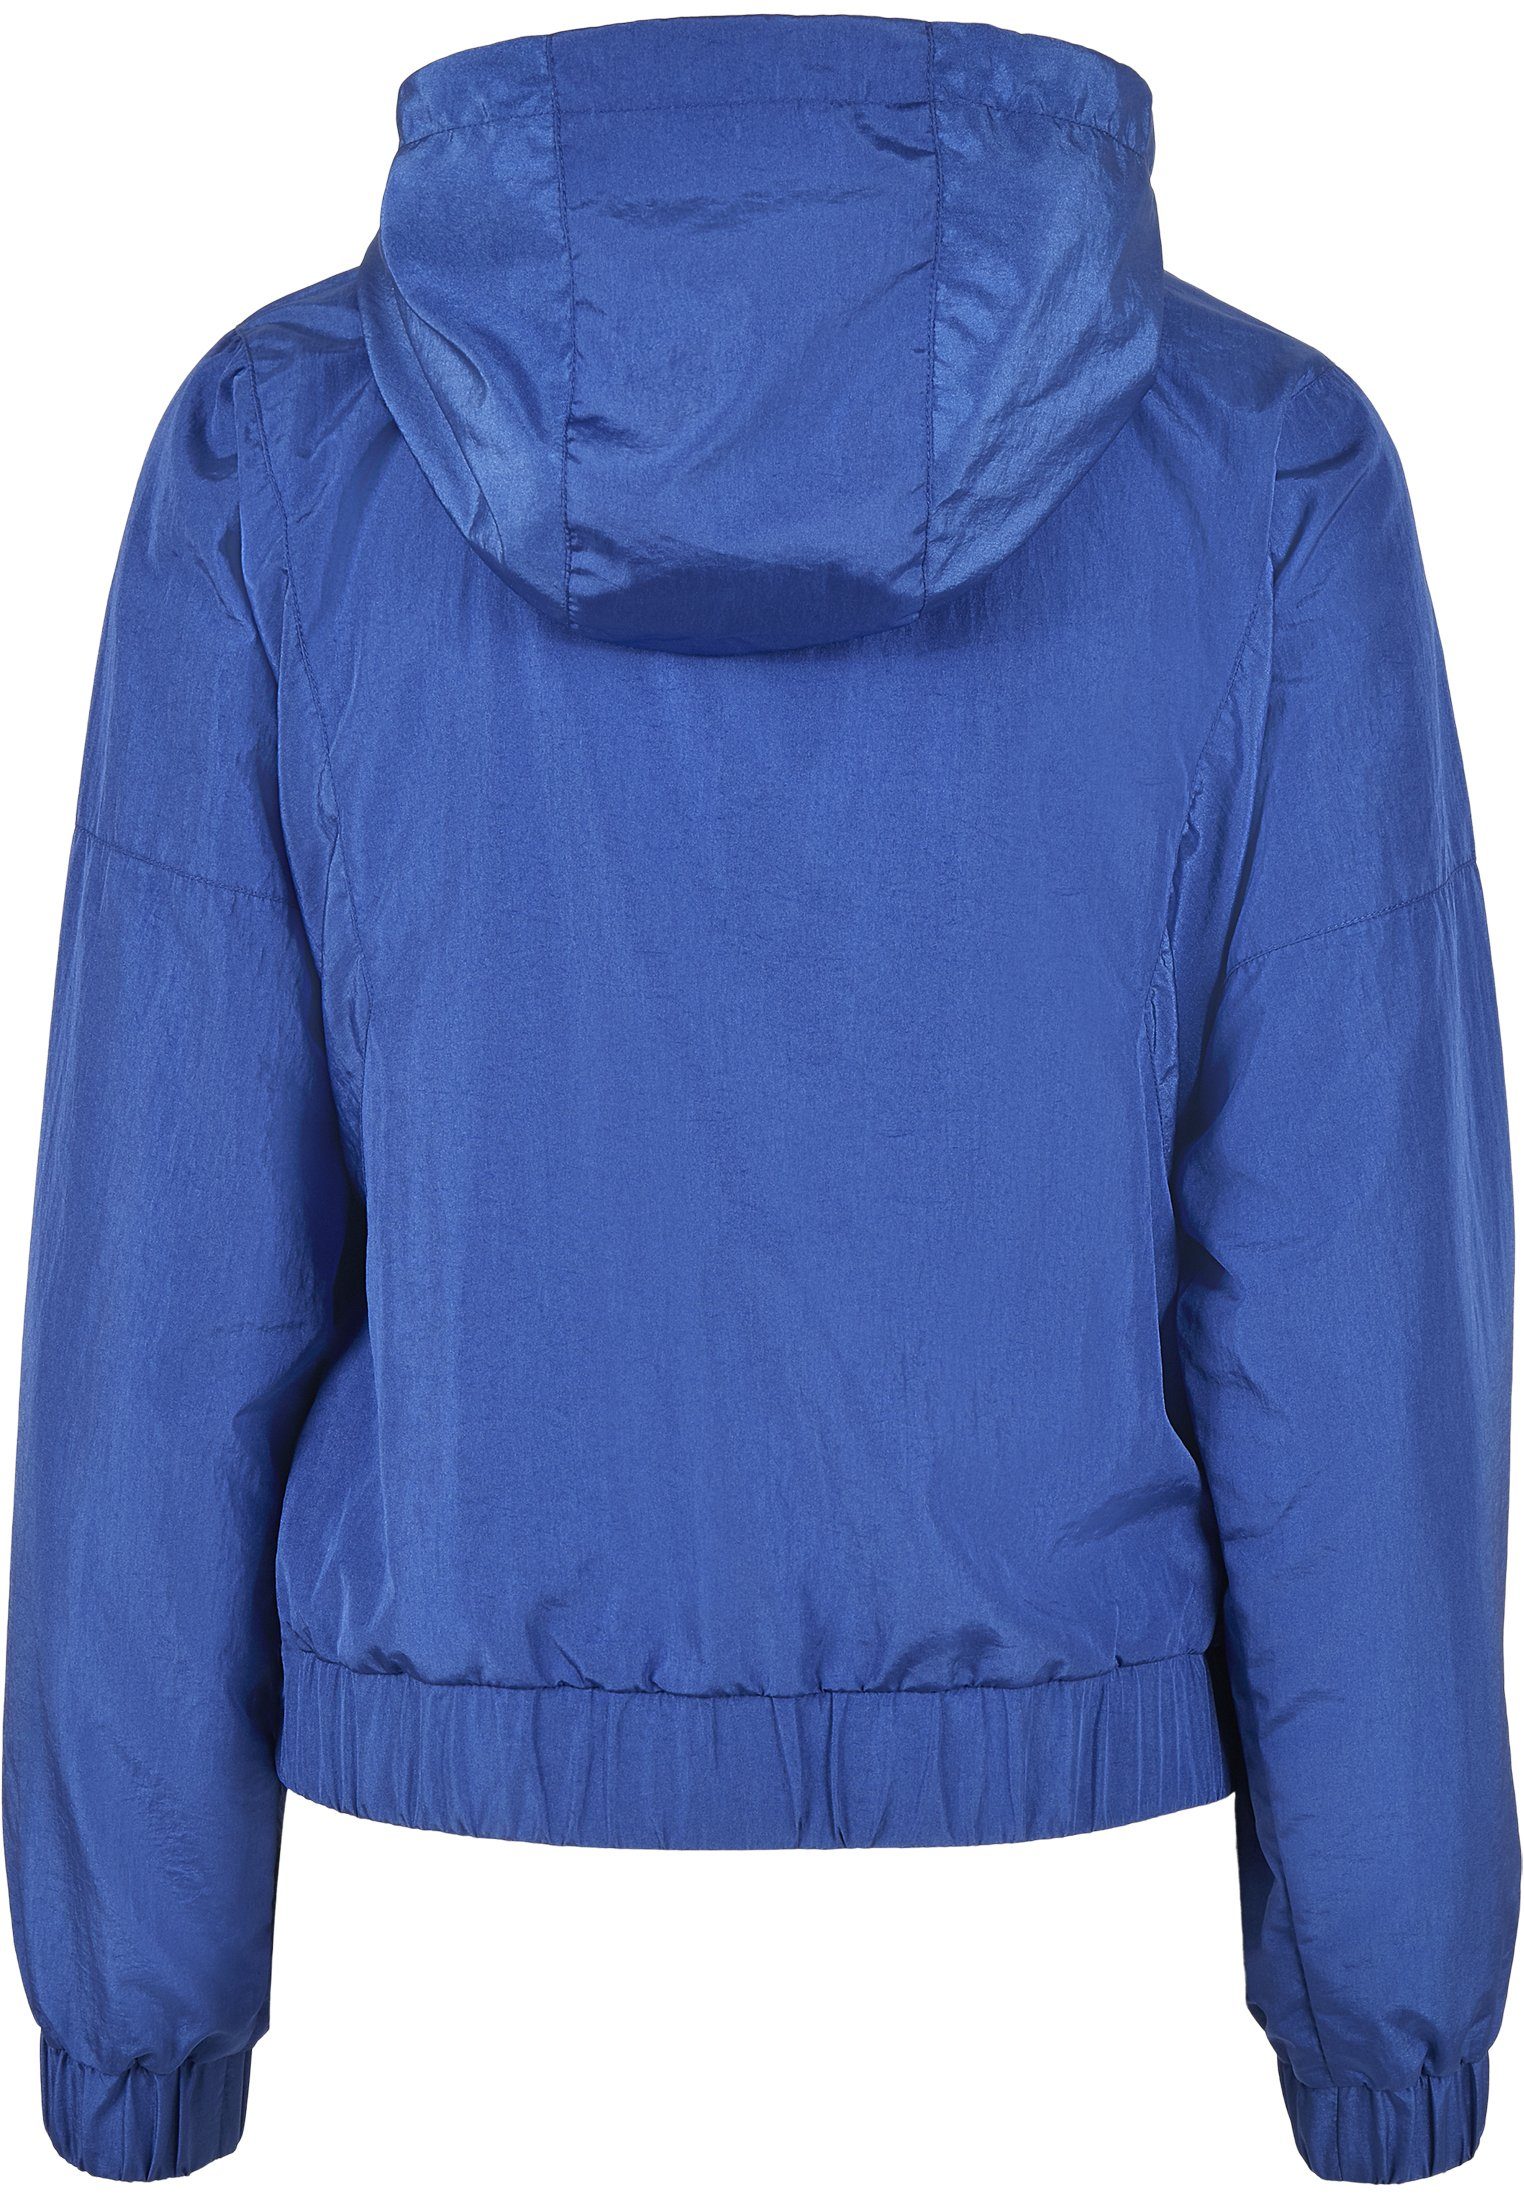 (1-St) Jacket URBAN Oversized Nylon Crinkle Outdoorjacke sportyblue Ladies Frauen Shiny CLASSICS